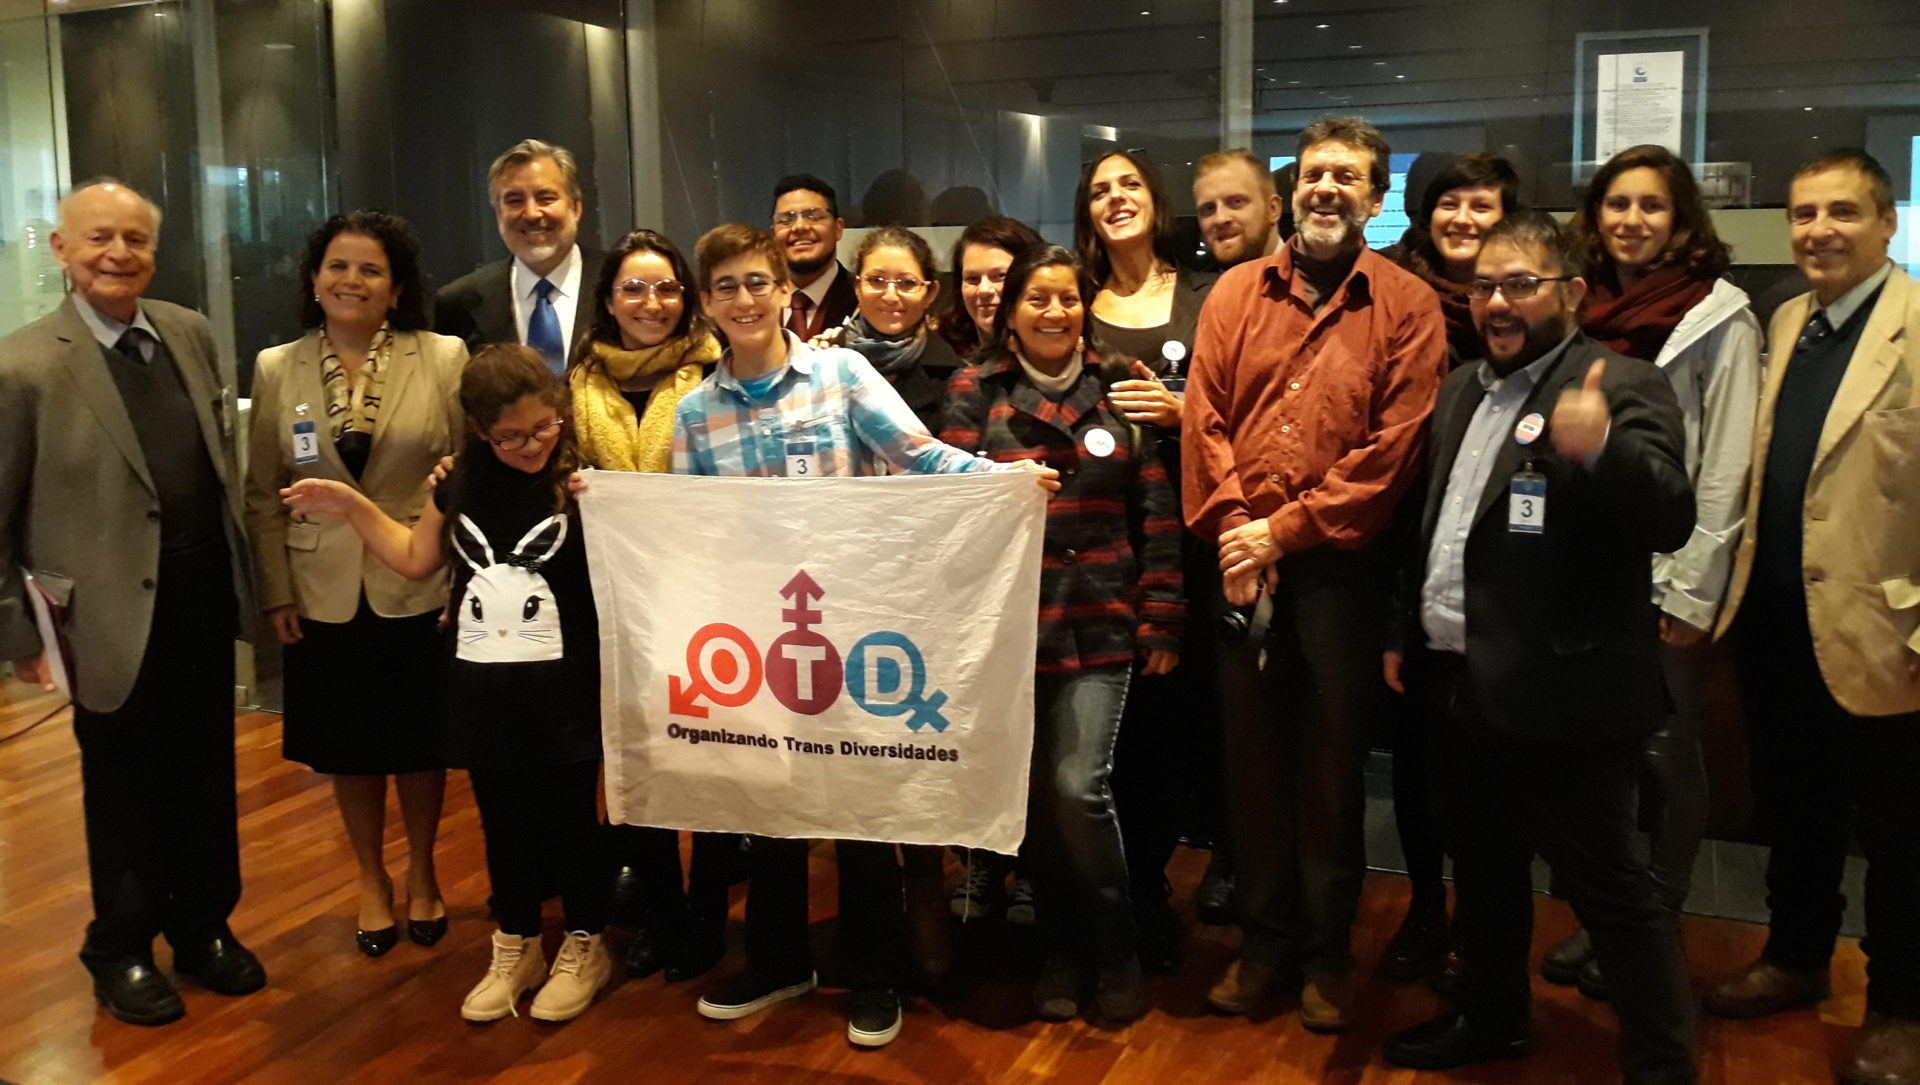 OTD Chile organiza seminario sobre ley de identidad de género en el Congreso